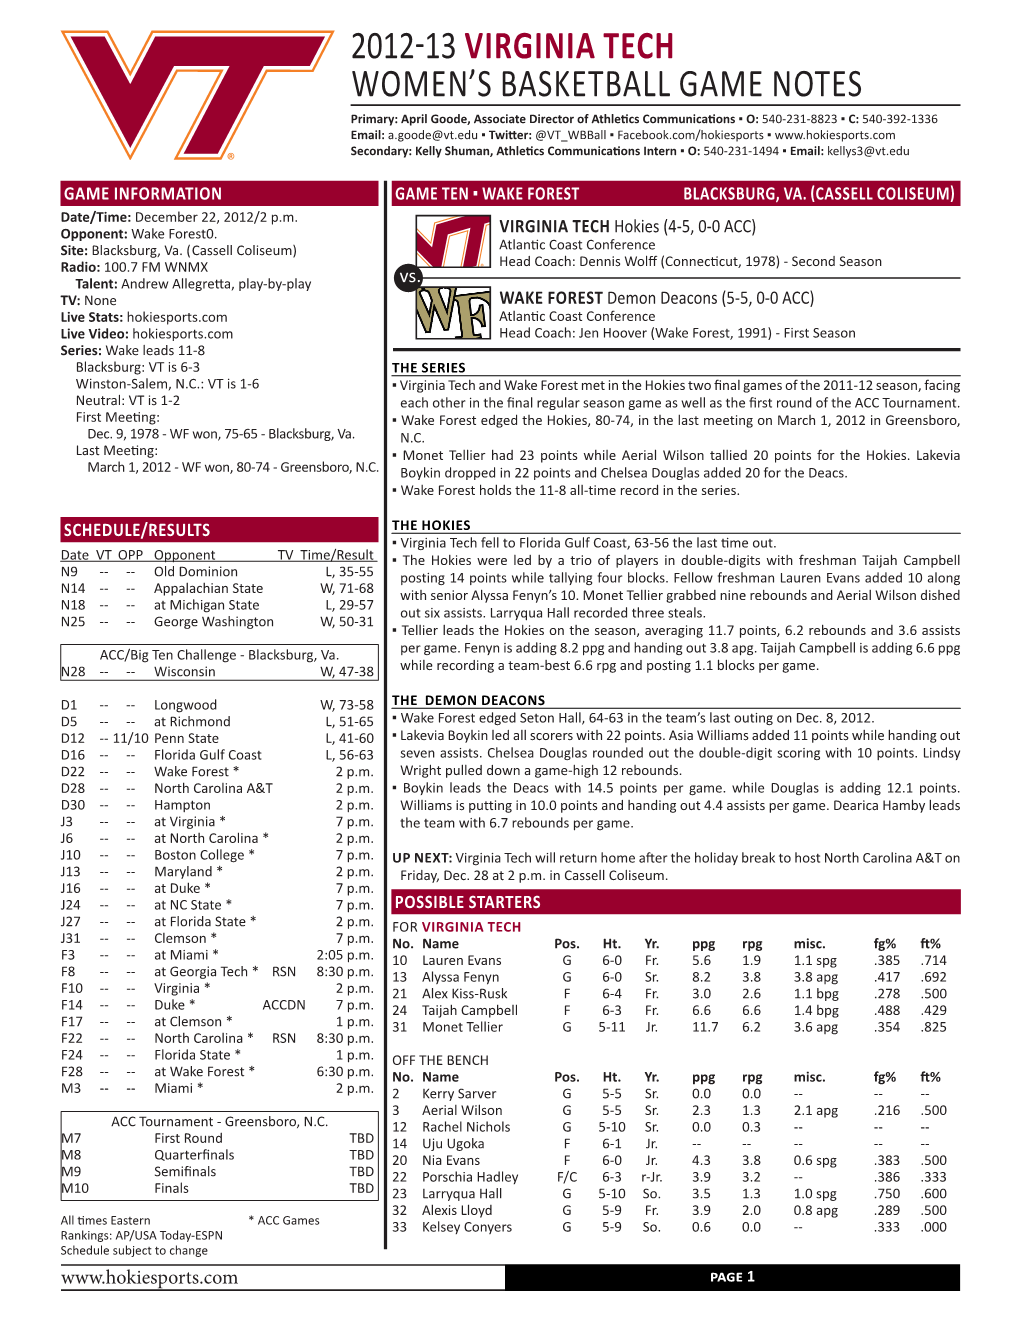 2012-13 Virginia Tech Women's BASKETBALL GAME Notes